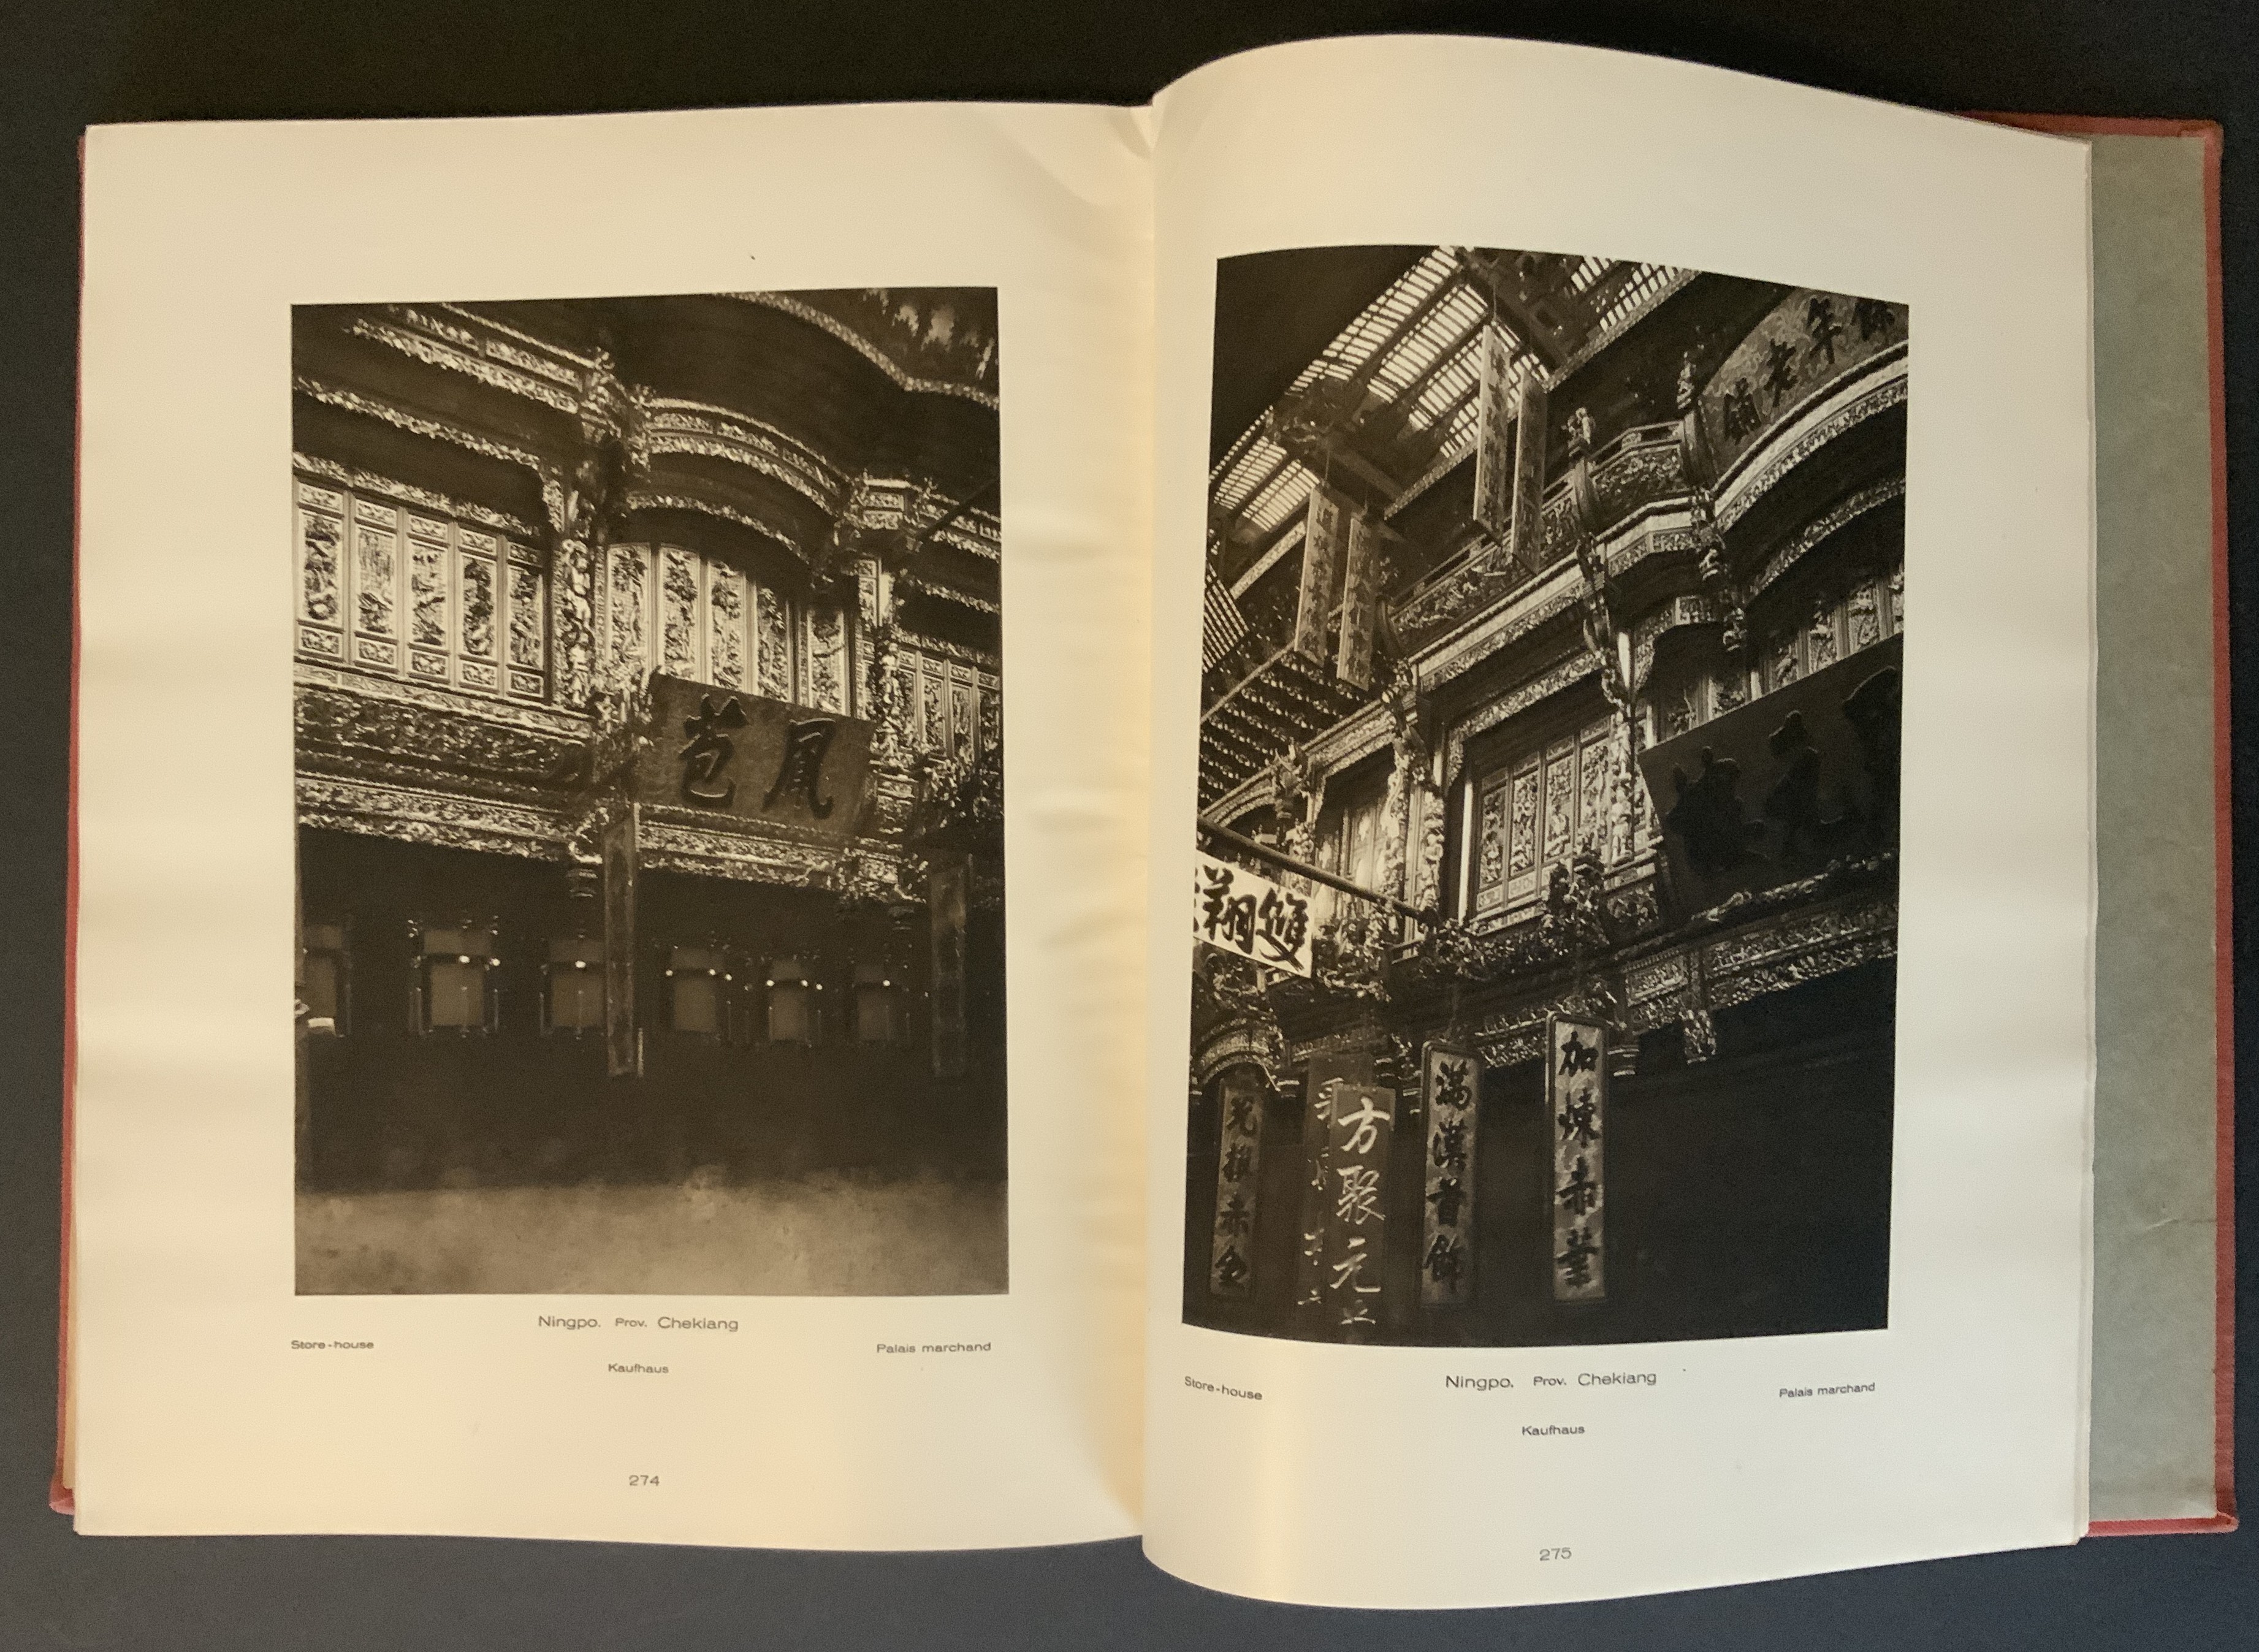 LA CHINE PITTORESQUE BY D'ERNEST BOERSCHMANN PUBLISHED BY LIBRAIRIE DES ARTS DECORATIFS PARIS CONTAI - Image 18 of 19